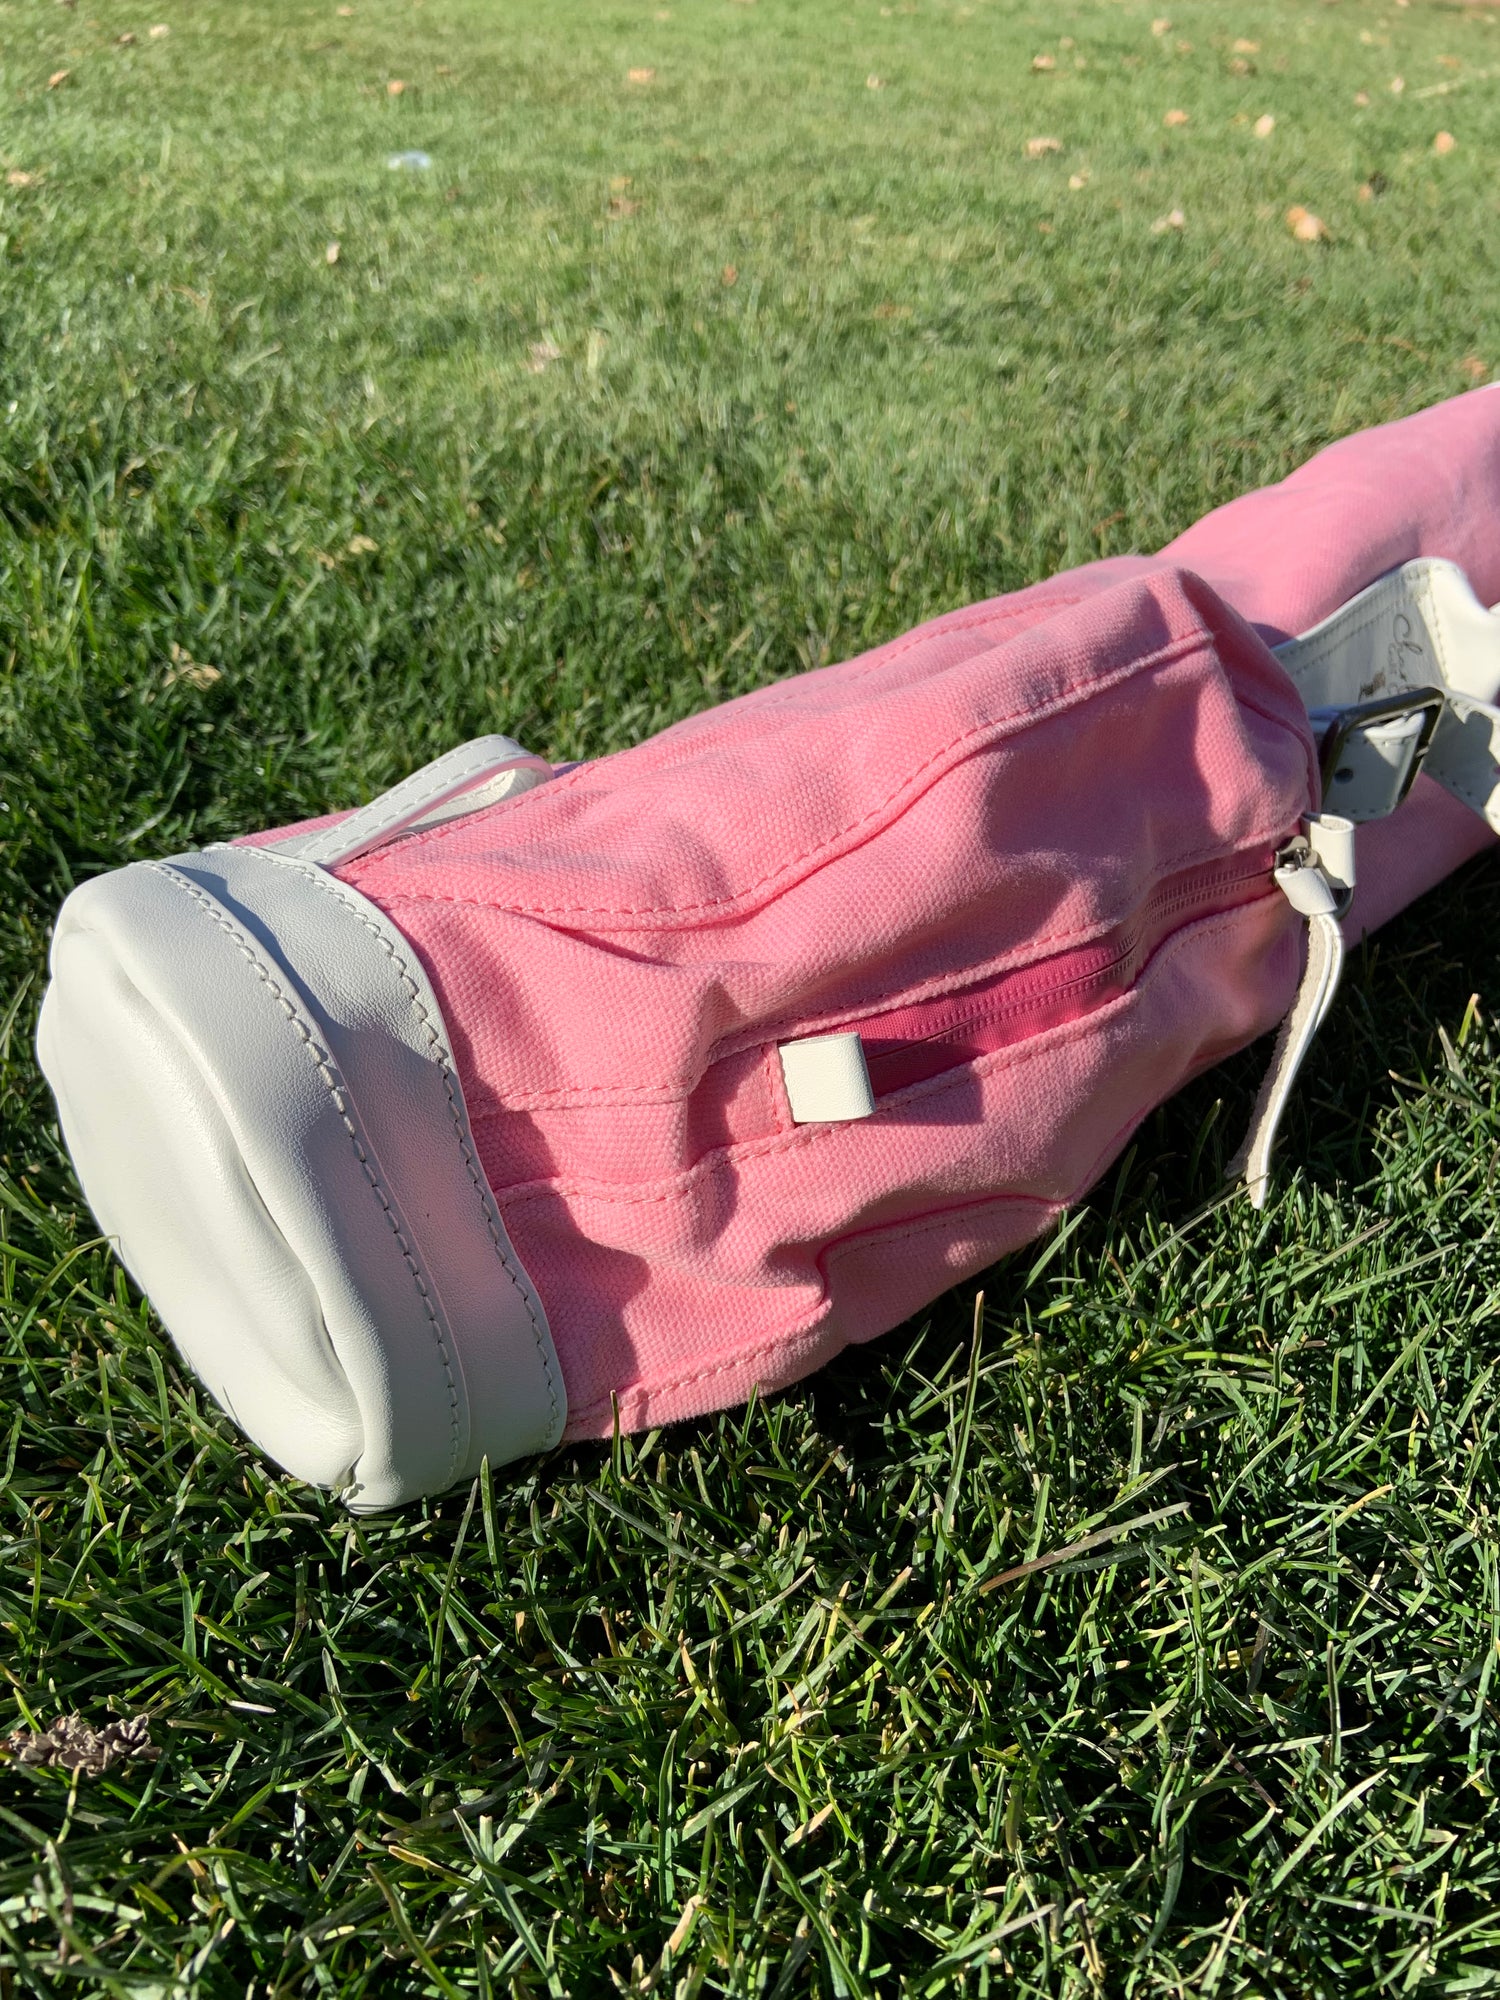 pocket of the pink kids golf bag